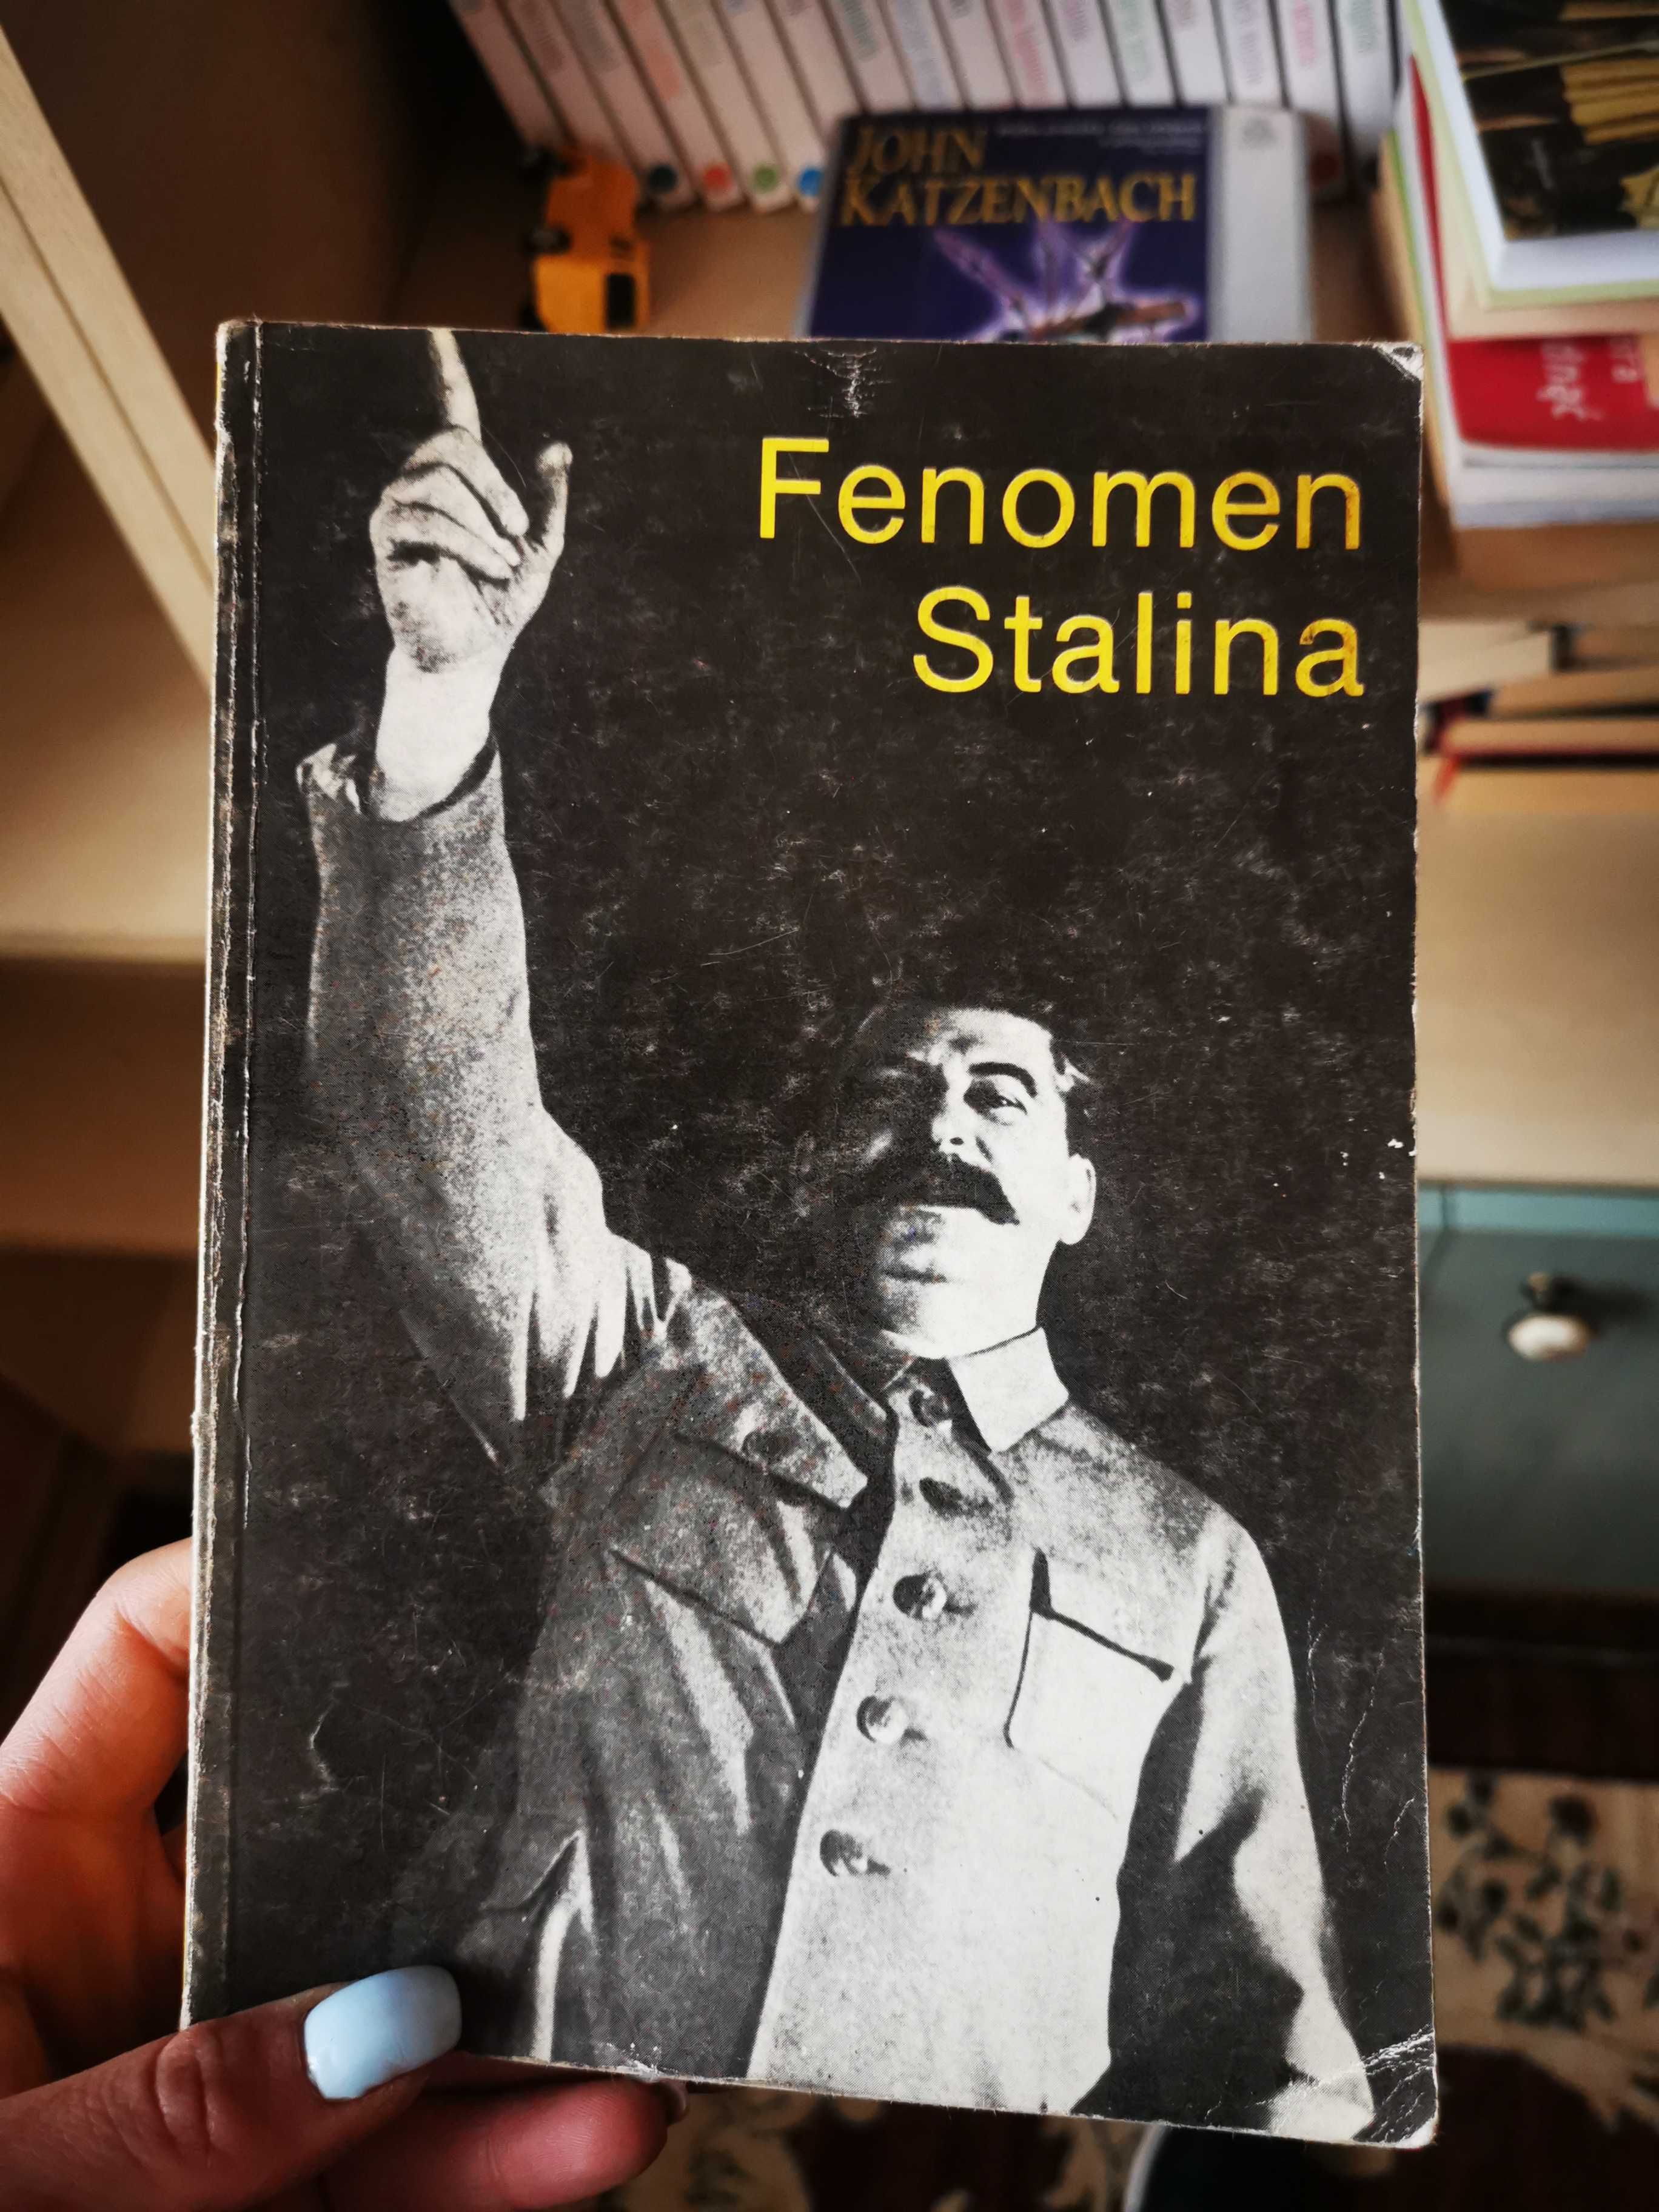 Szaleństwo Stalina constantine pleshakov i Fenomen Stalina